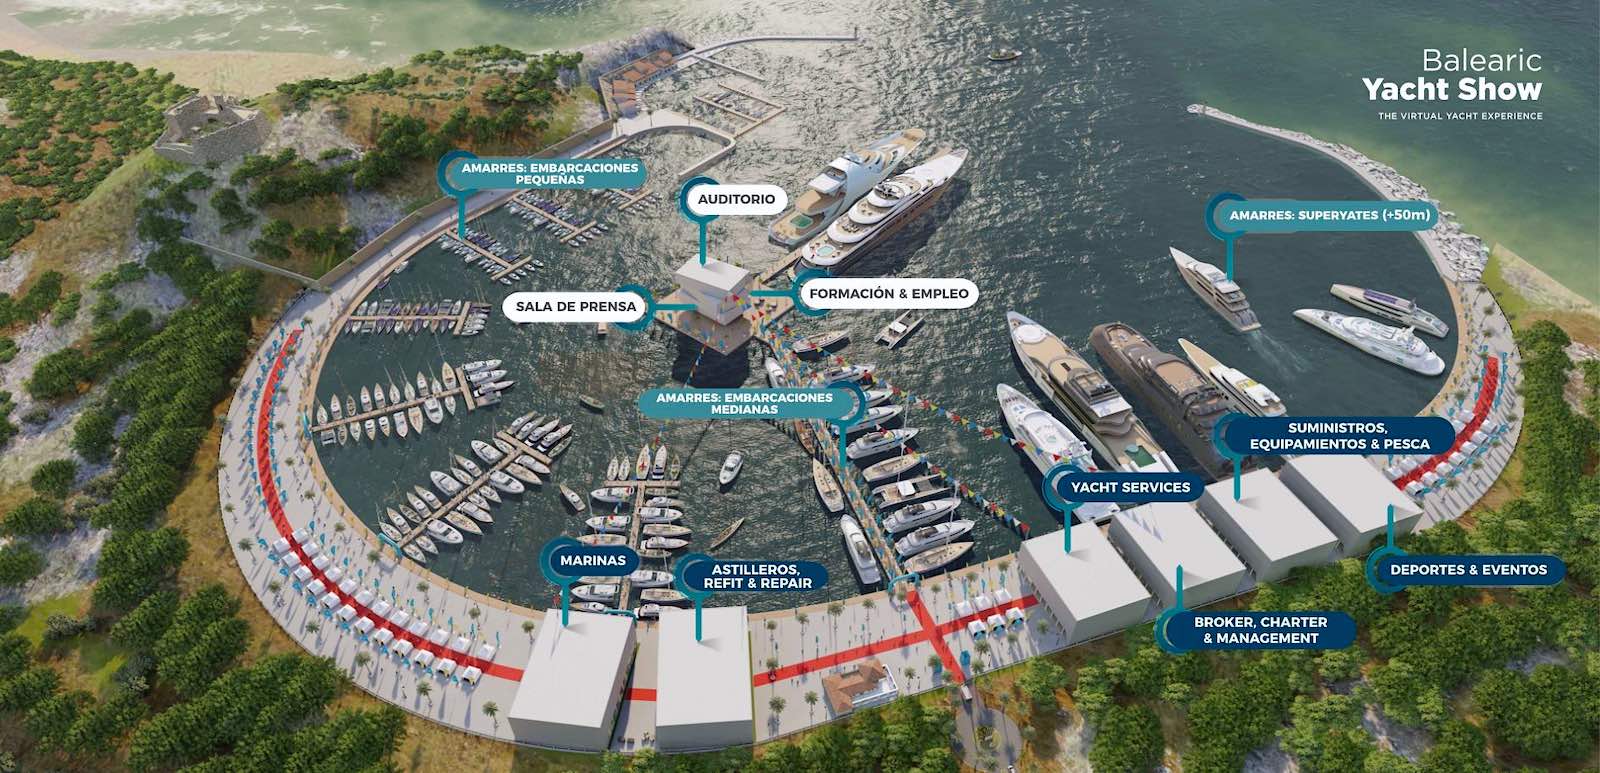 Las grandes empresas del sector náutico nacional e internacional se suman a Balearic Yacht Show